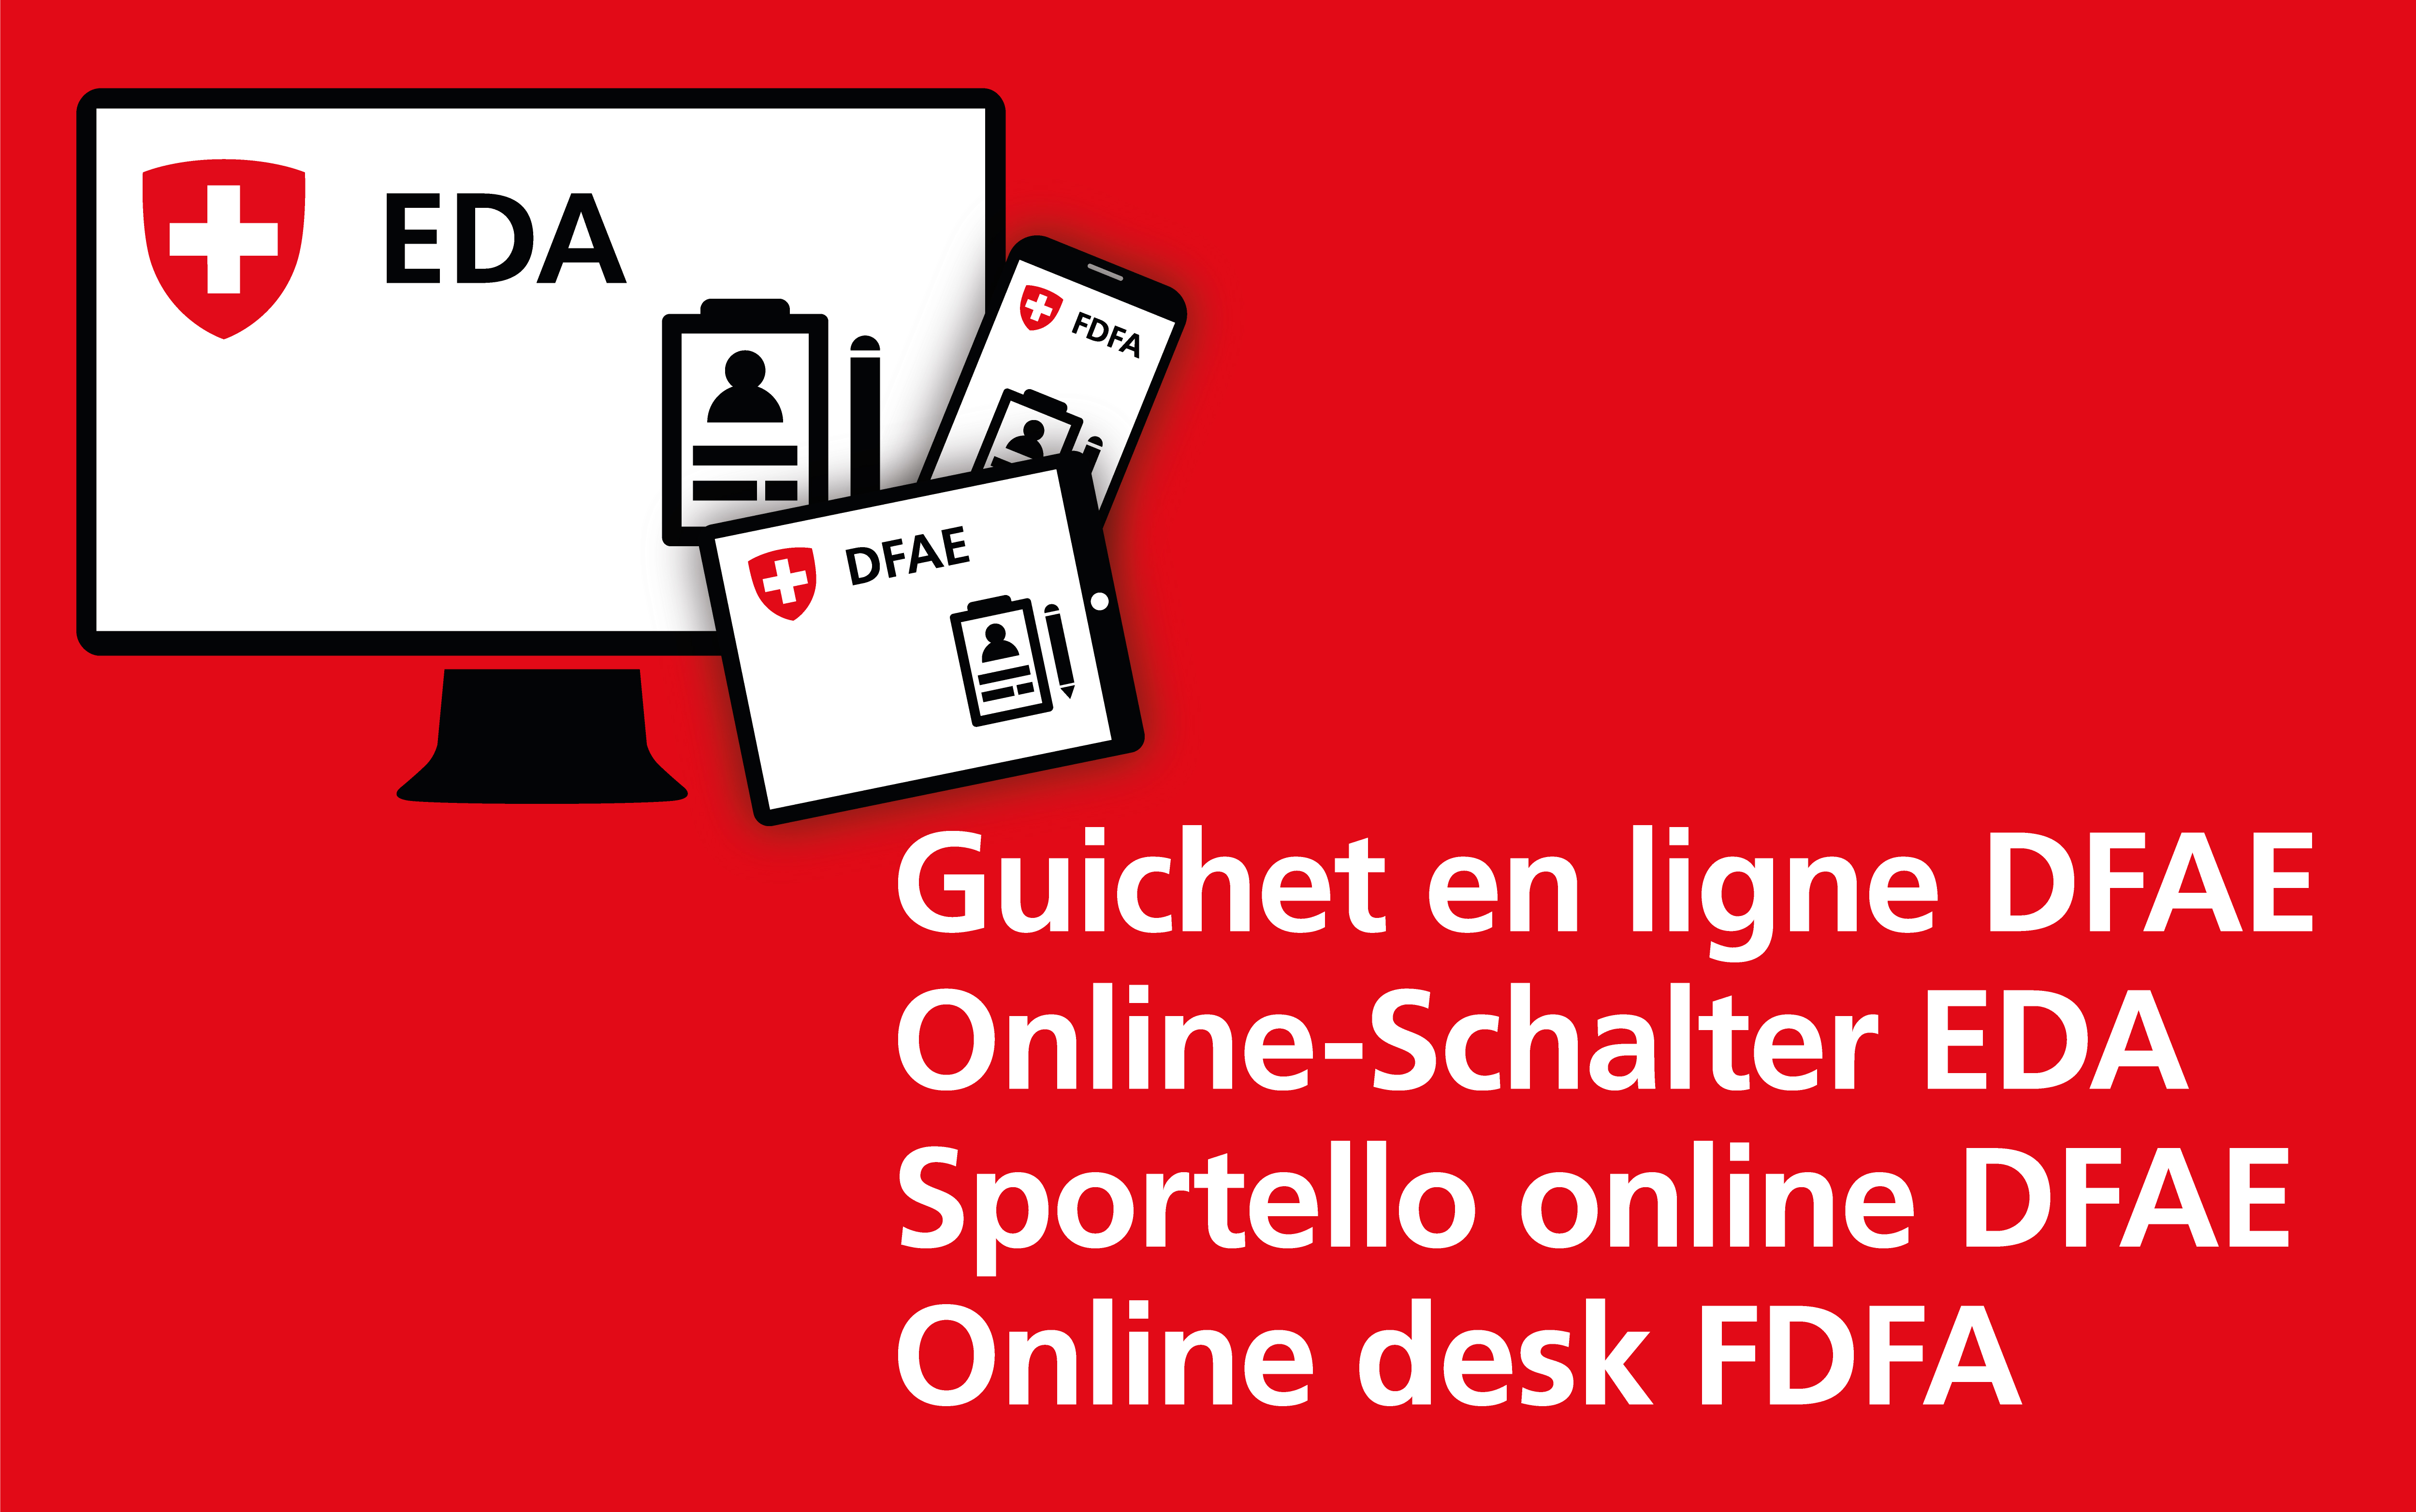 Viersprachiges Logo des Online-Schalters EDA.